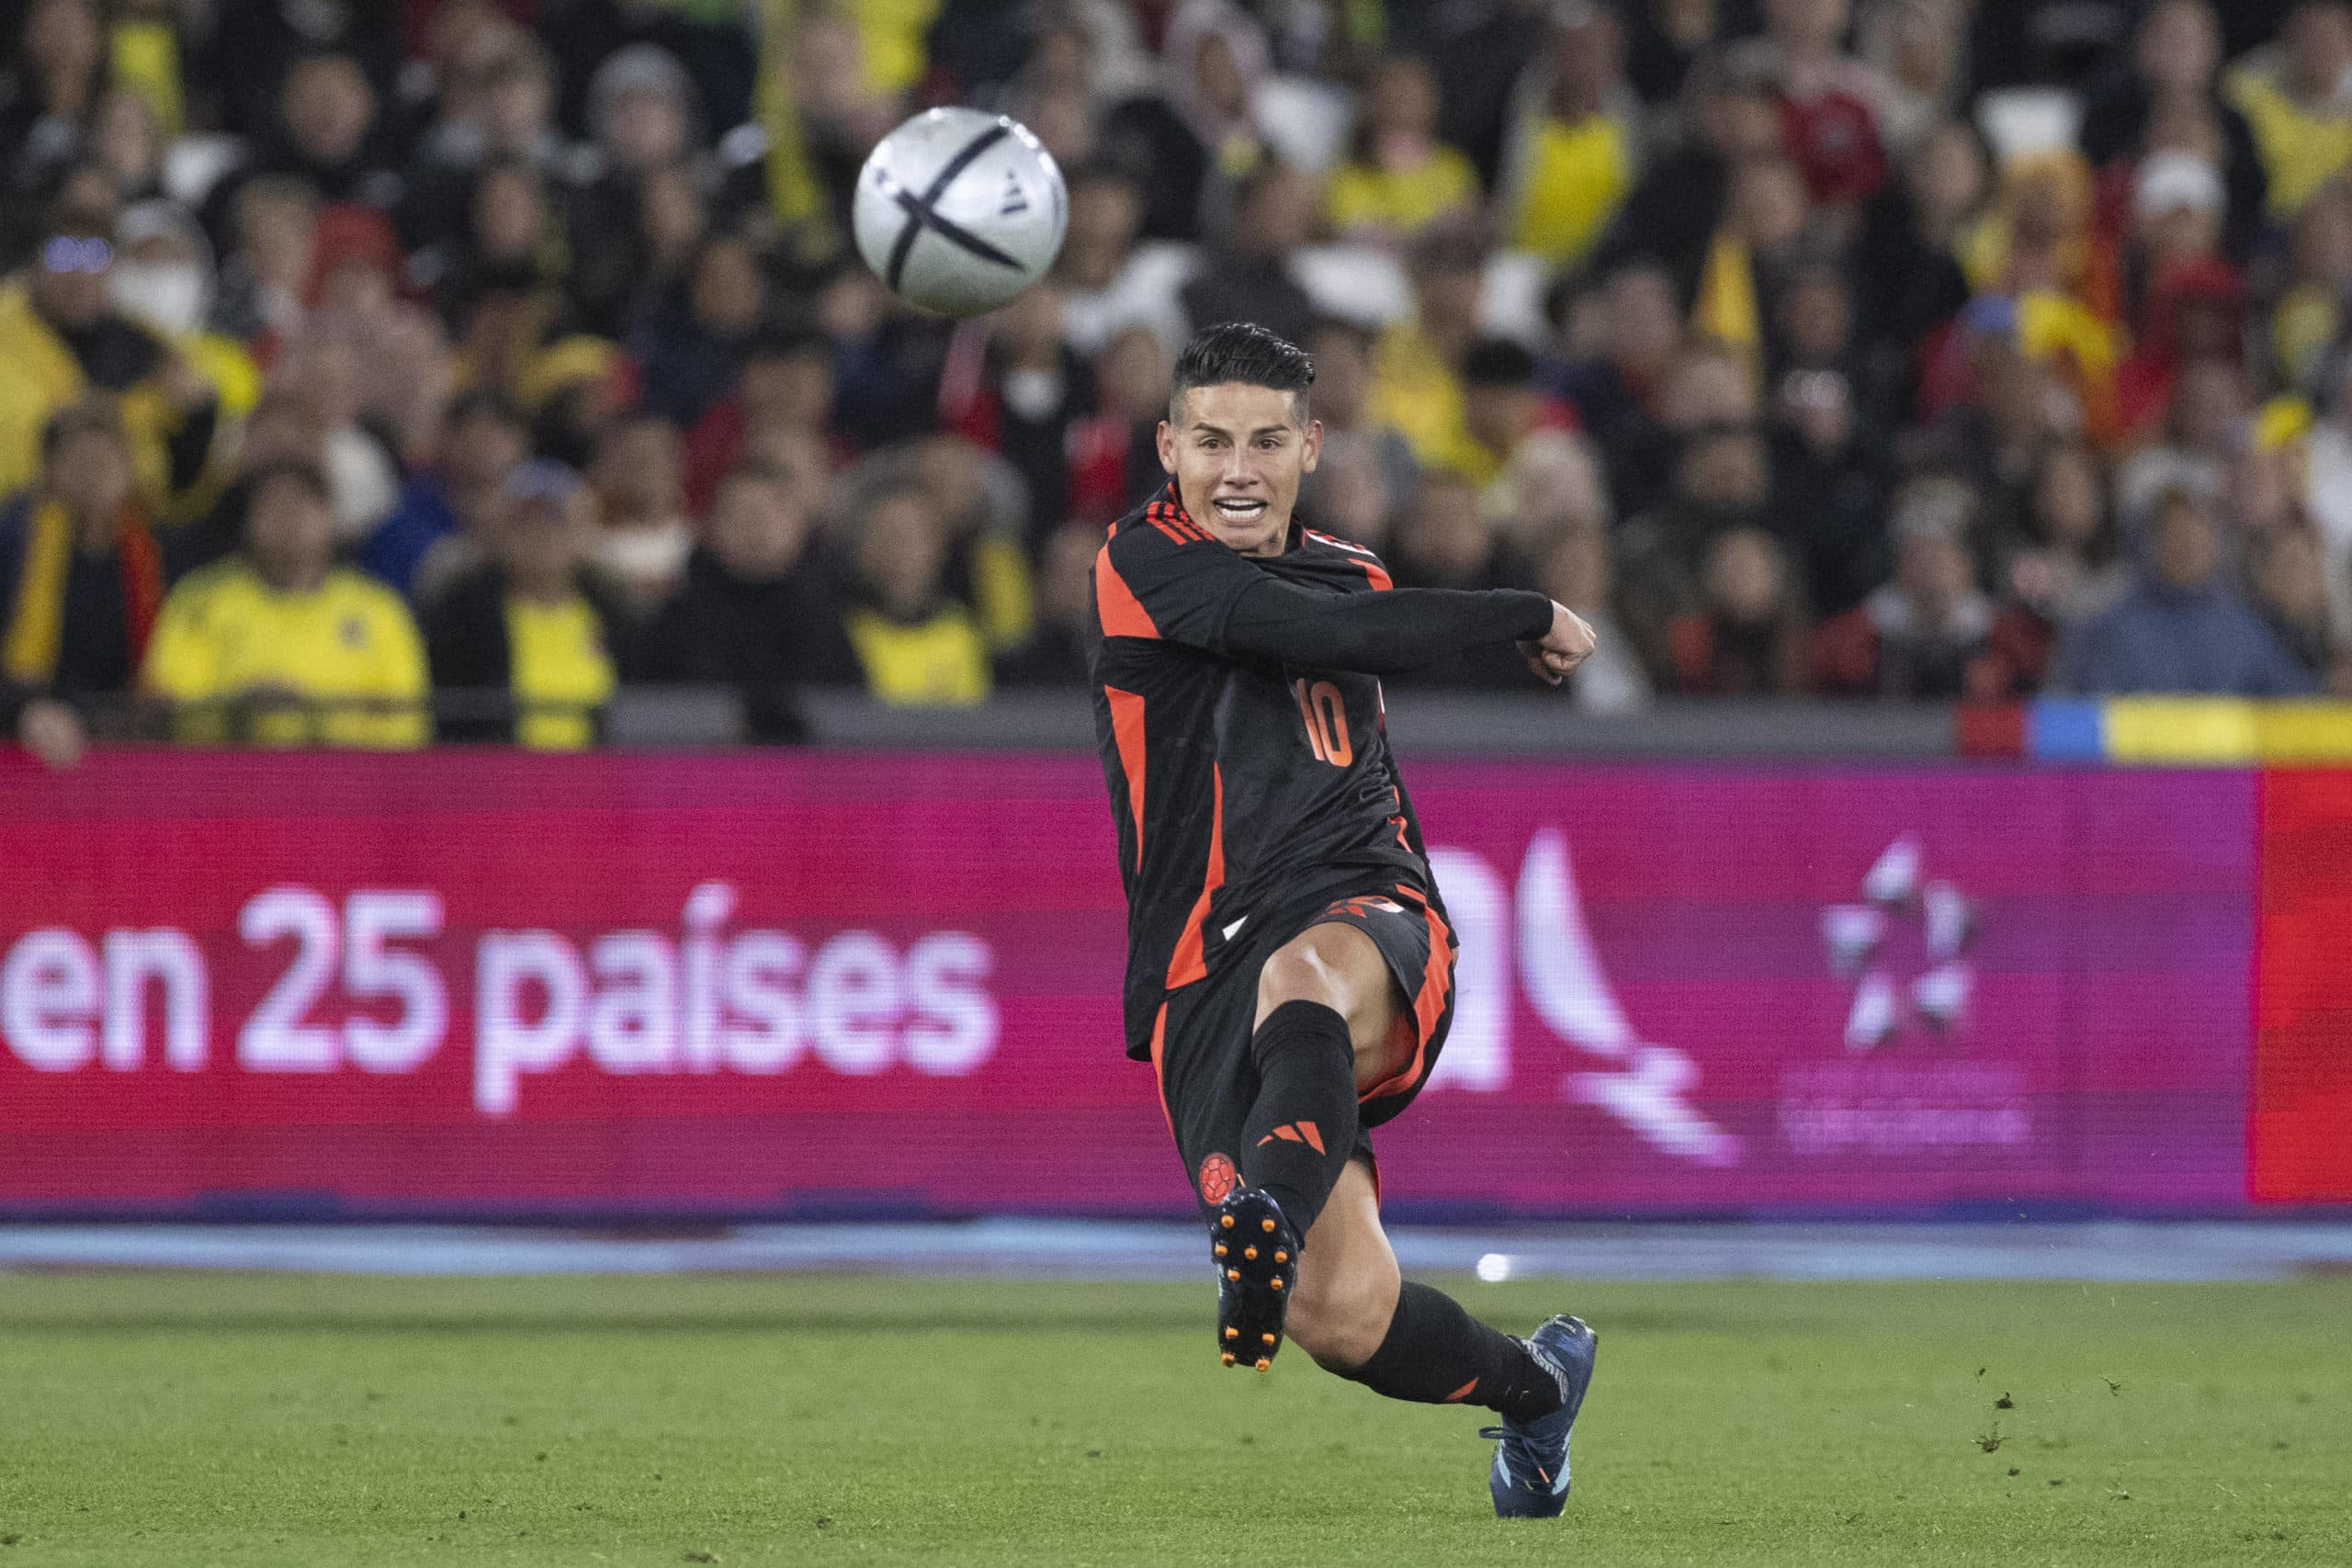 Reserva no São Paulo, James Rodríguez pensa em voltar ao futebol espanhol